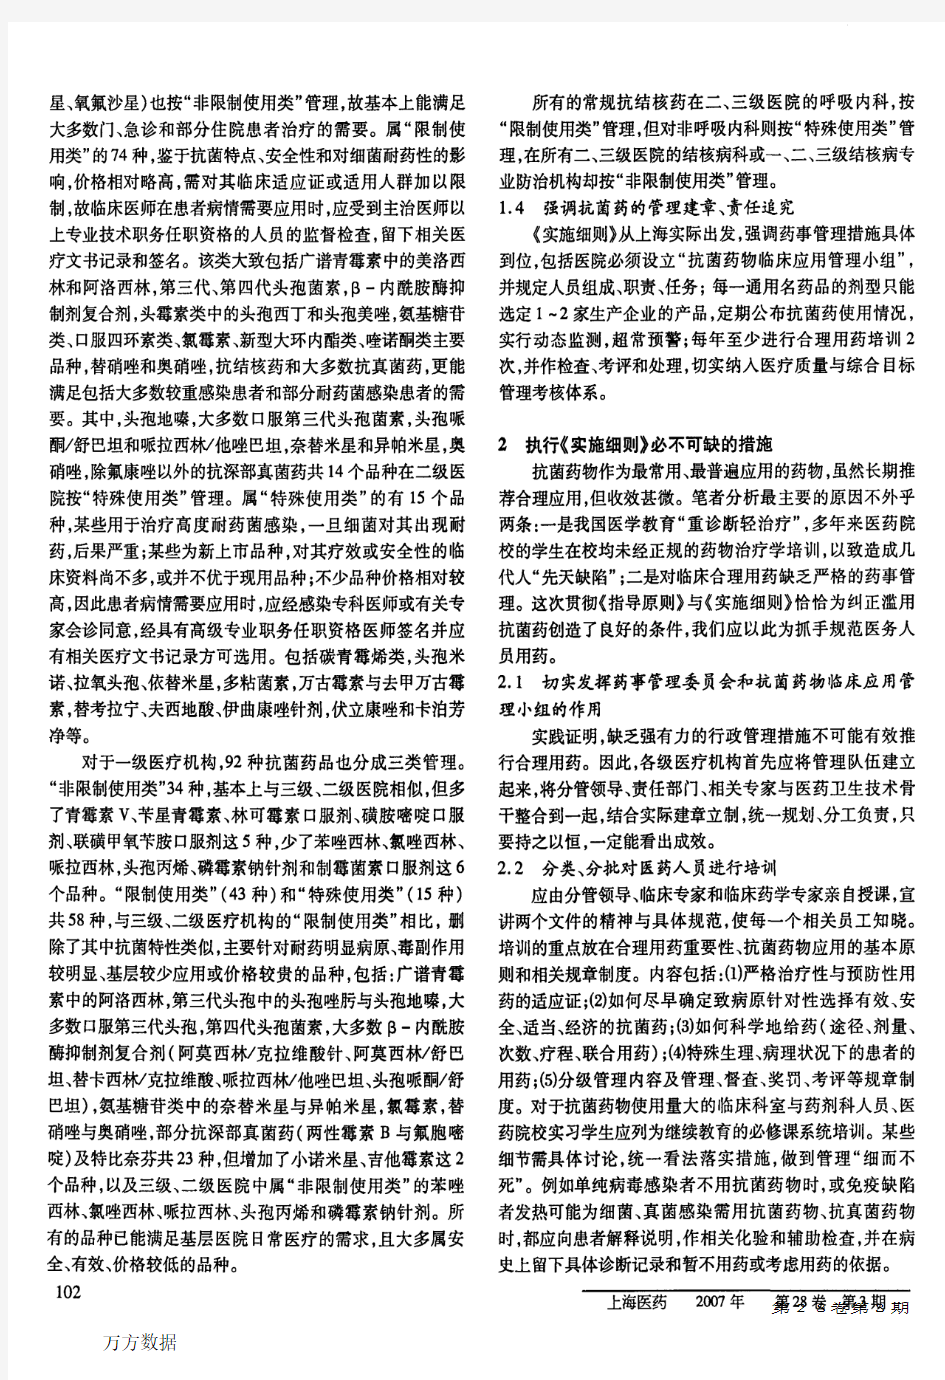 规范抗菌药临床应用的指南——上海市颁布《抗菌药物临床应用指导原则》实施细则